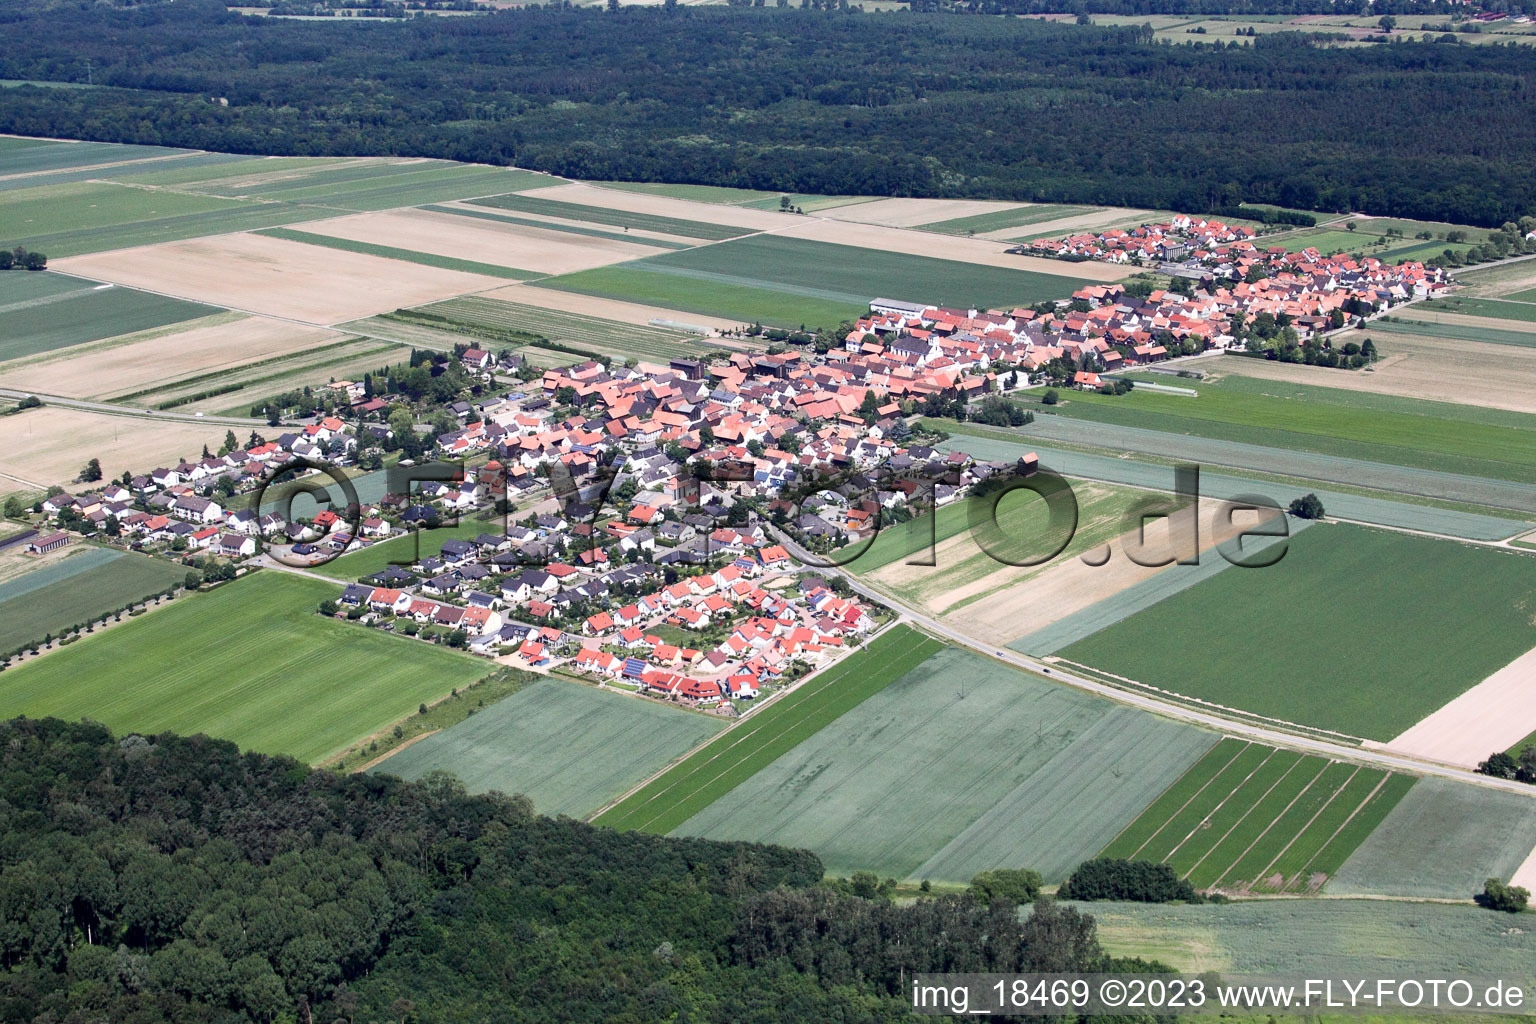 Quartier Hayna in Herxheim bei Landau/Pfalz dans le département Rhénanie-Palatinat, Allemagne vu d'un drone